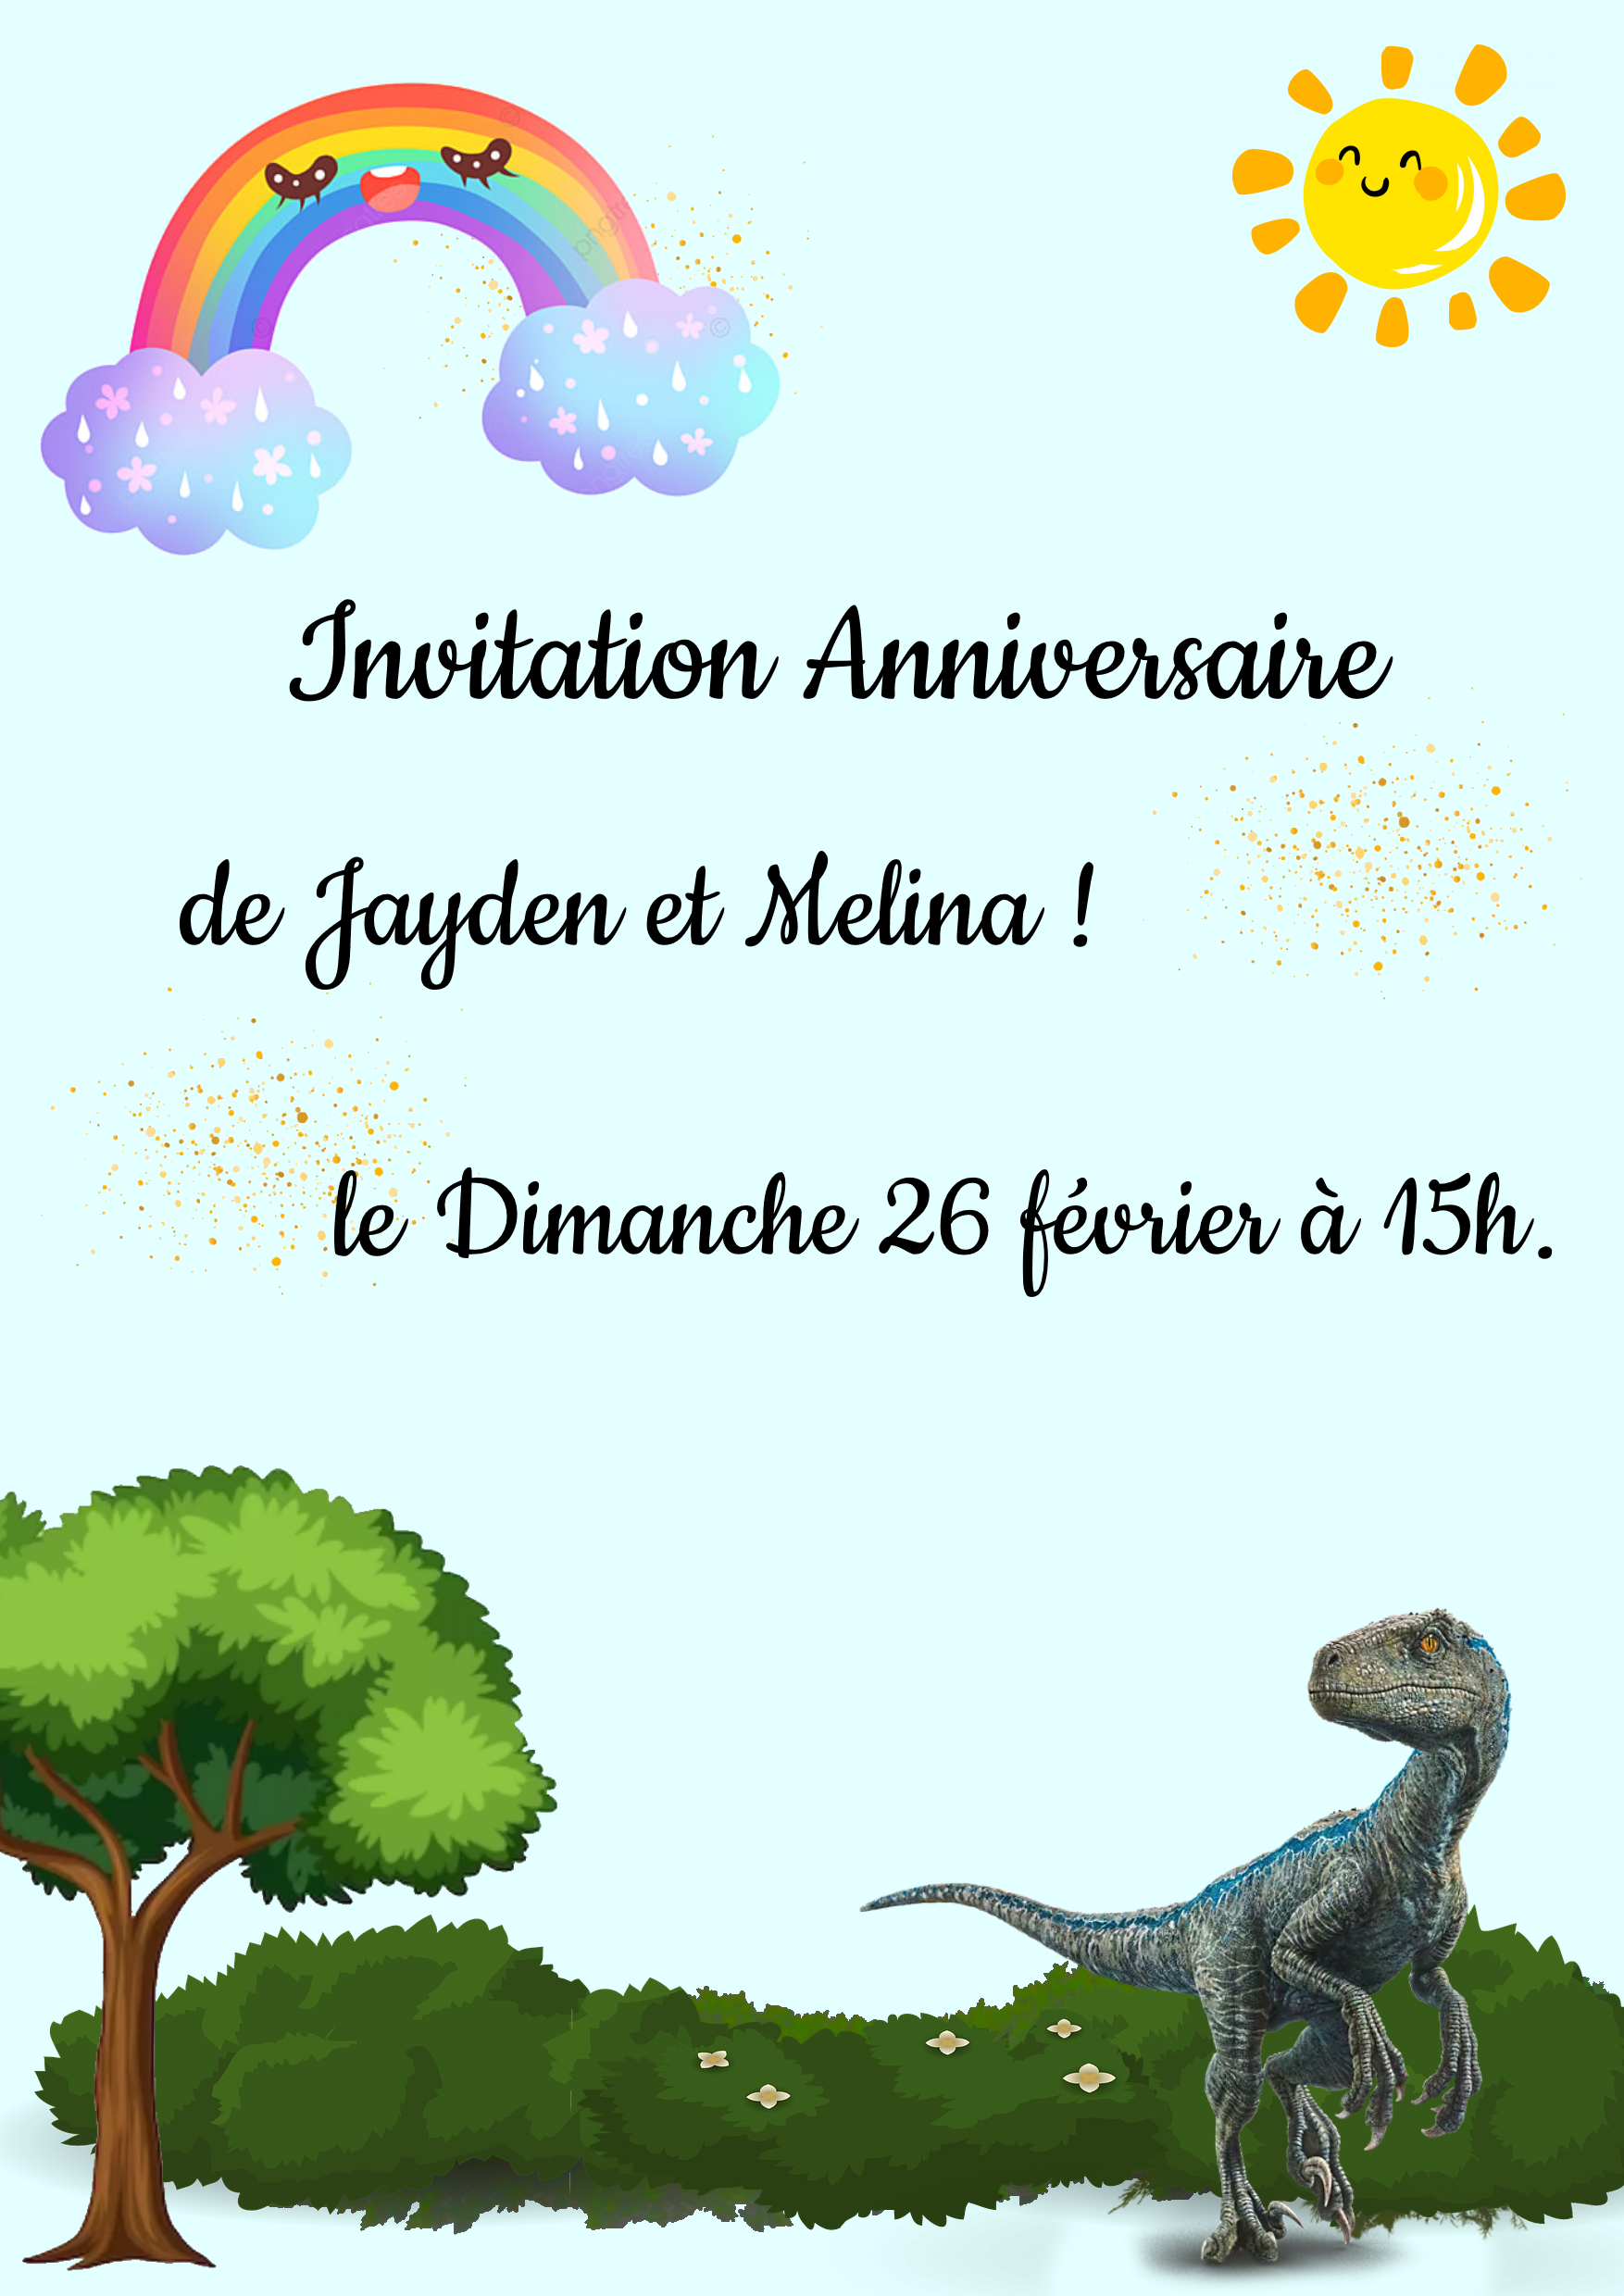 MBklHHeAe7Q_invitation-anniversaire-jayden-melina.png